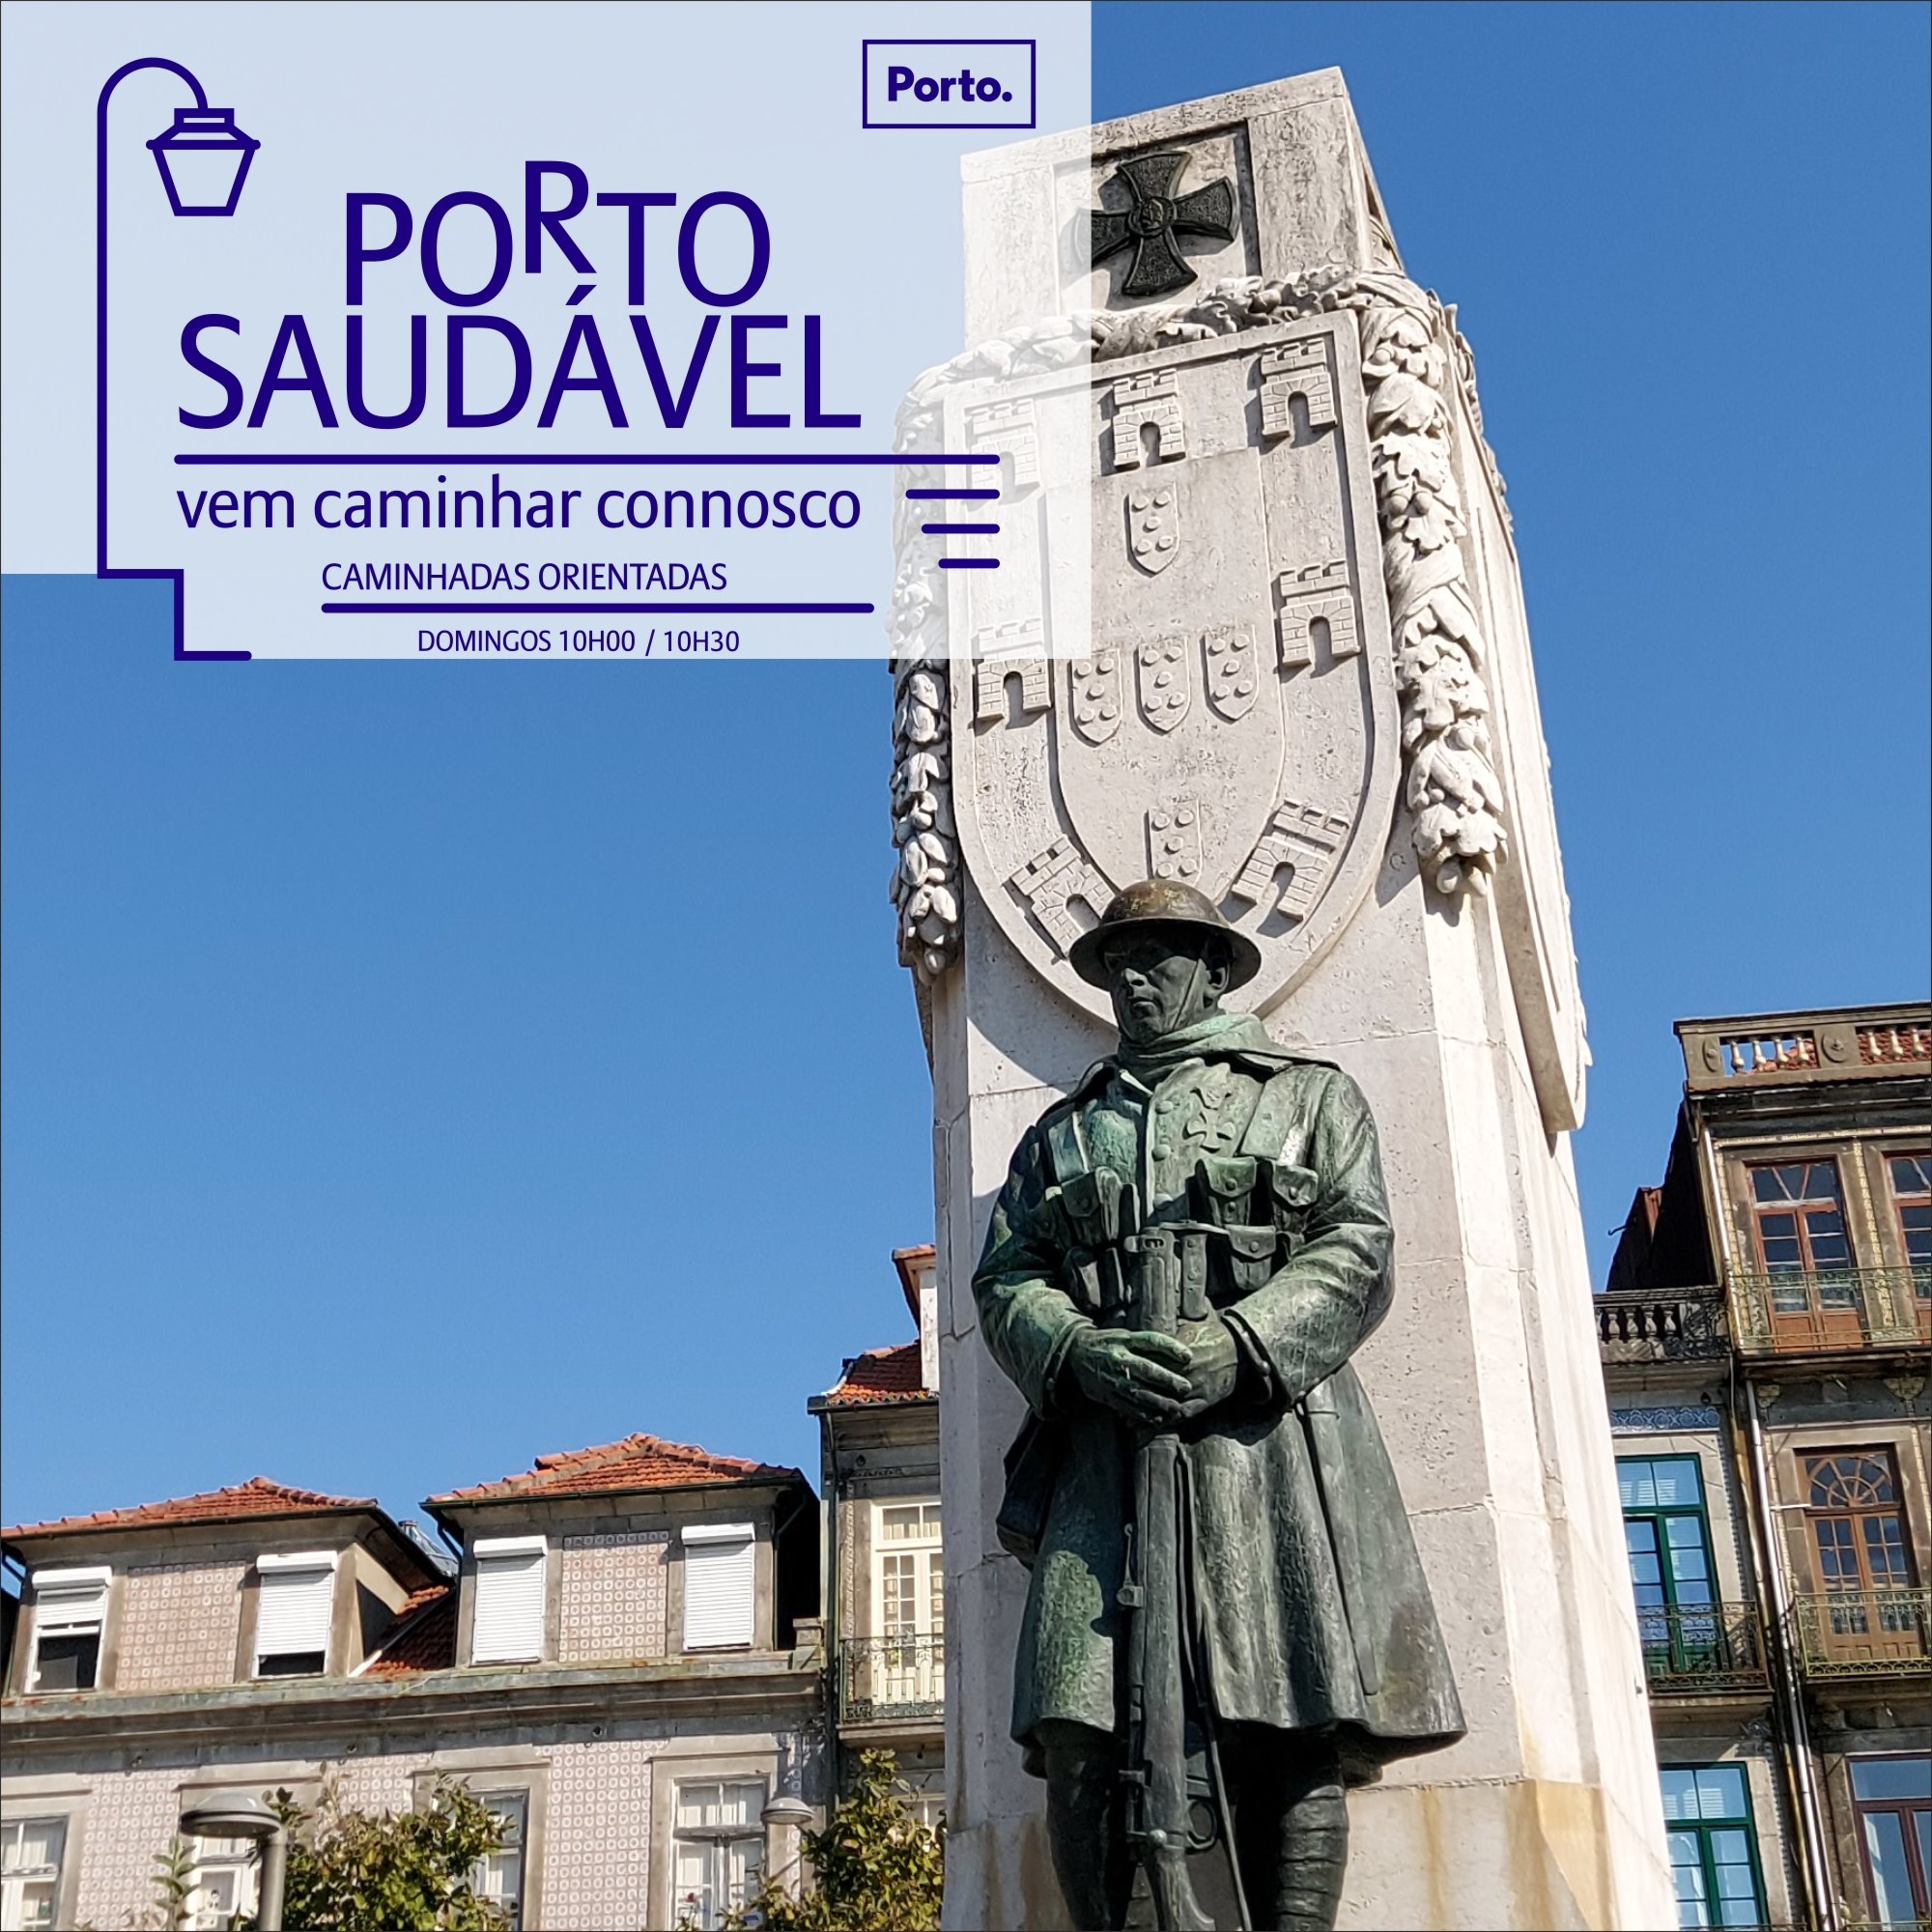 Porto Saudável - Event